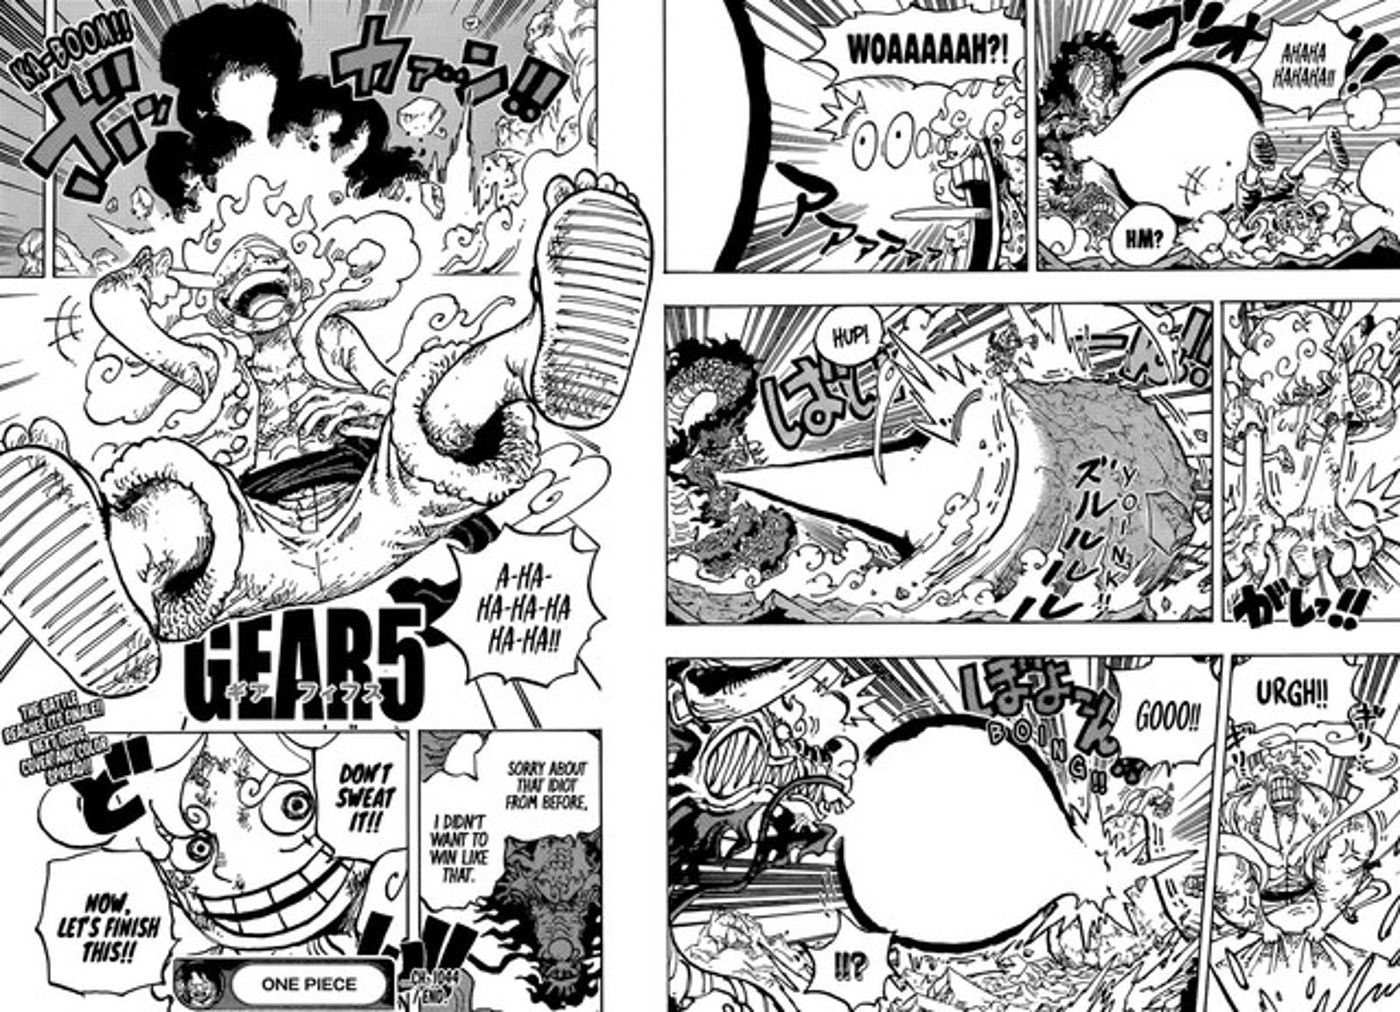 Capítulo 1044 de One Piece fez uma grande revelação sobre a Akuma